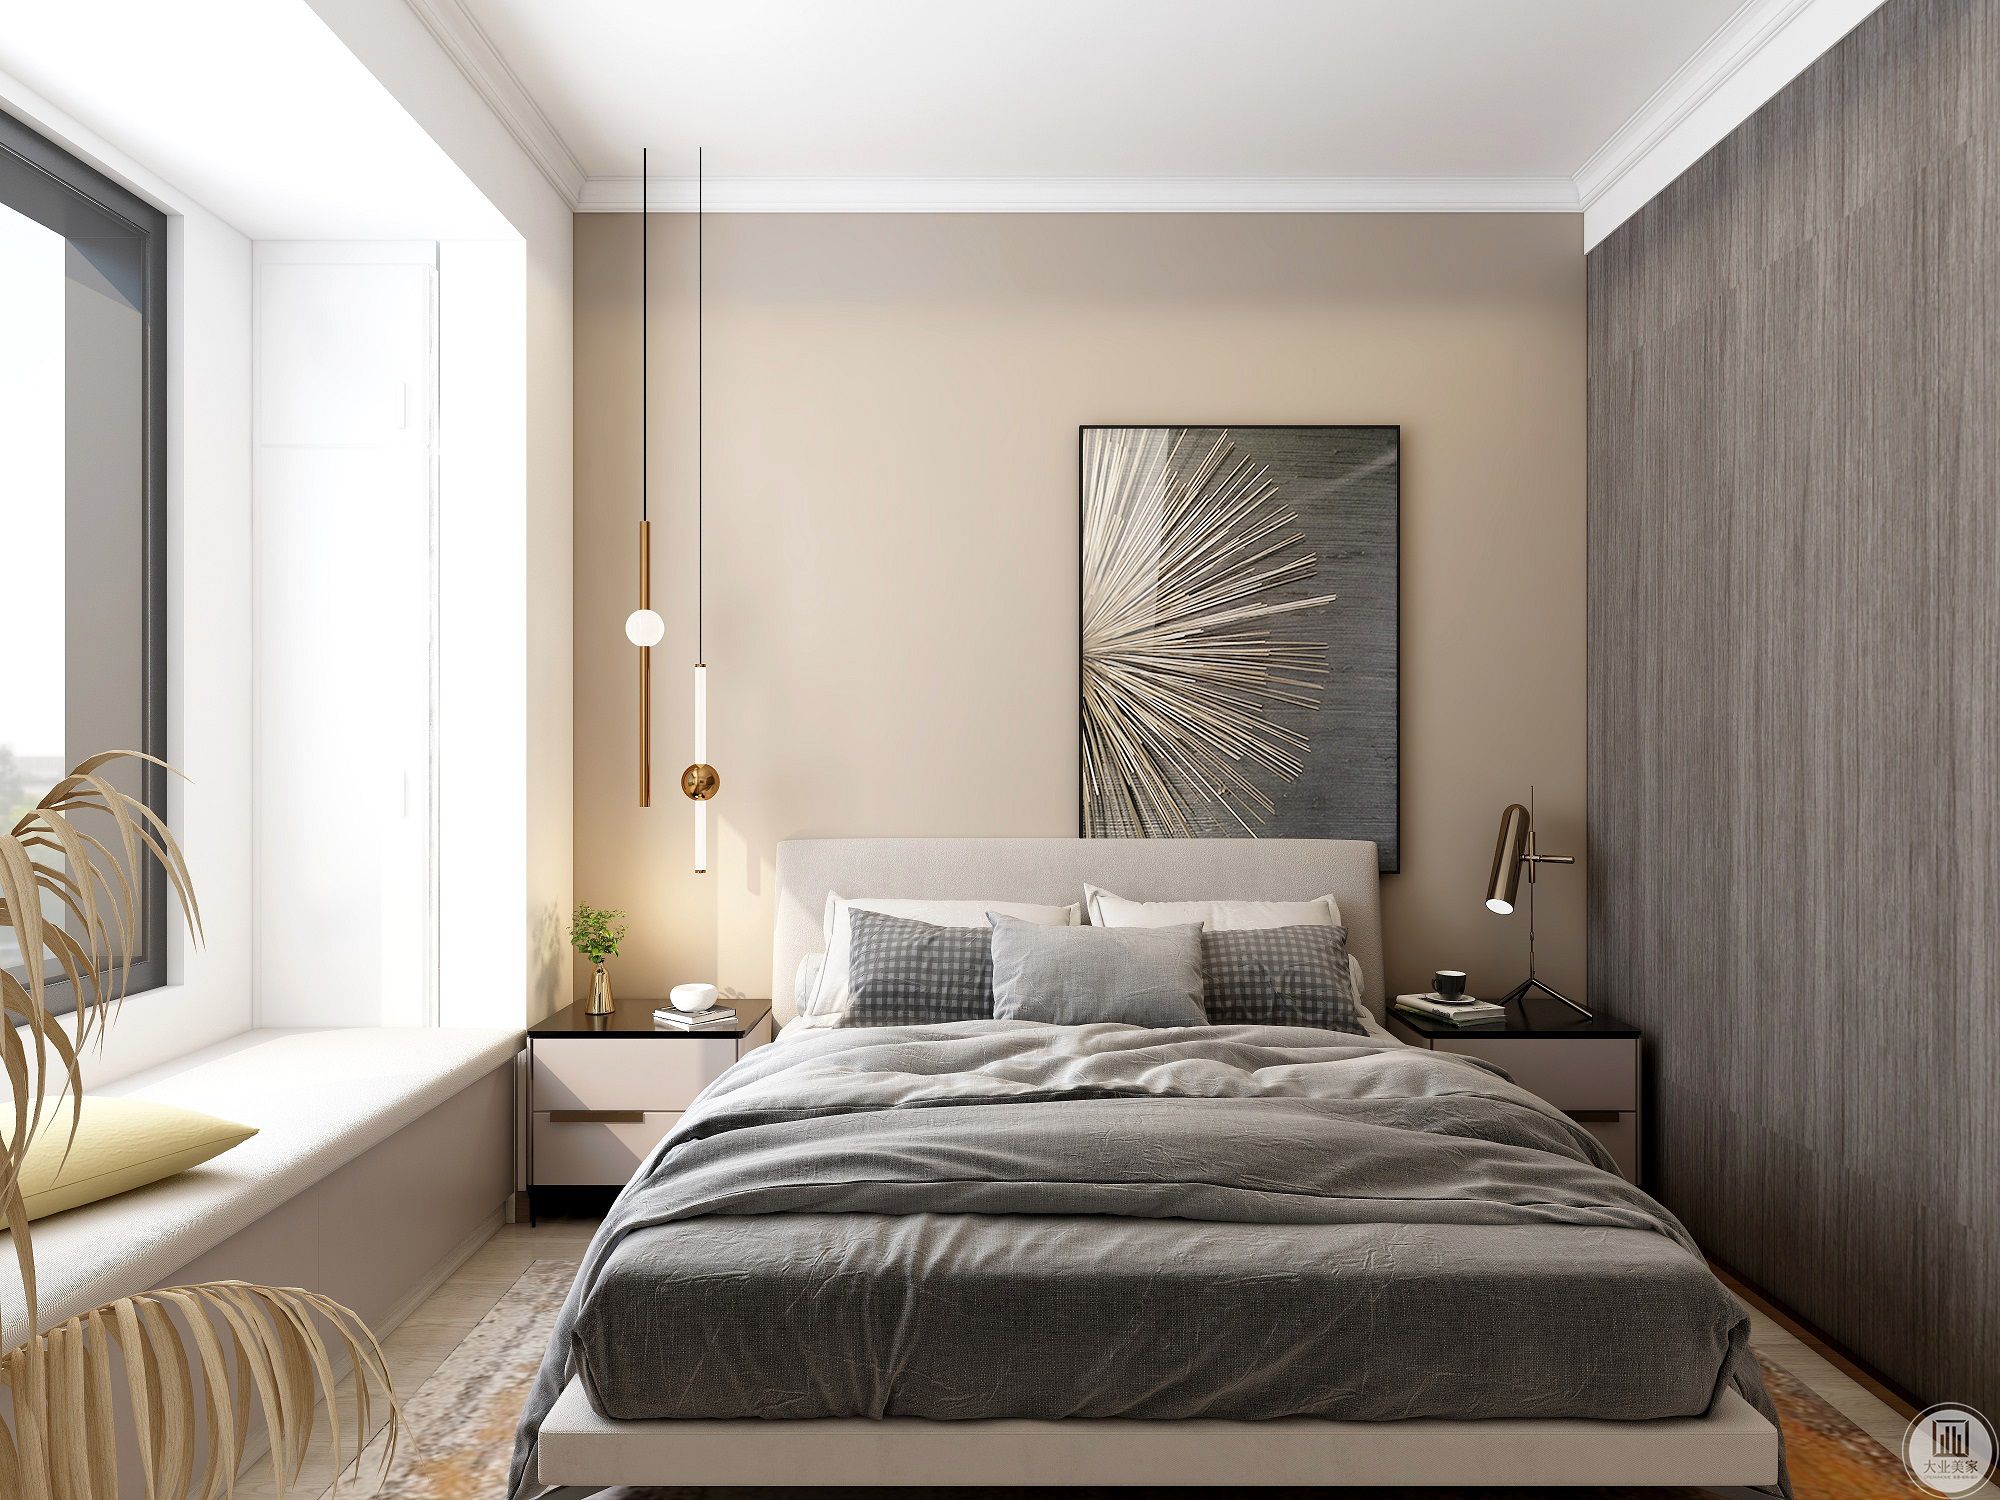 卧室墙面运用淡灰色的乳胶漆，极简的白色抽象艺术画静静散发着魅力，低饱和度的色彩与柔软的床品共同为业主提供了安稳惬意的睡眠环境。